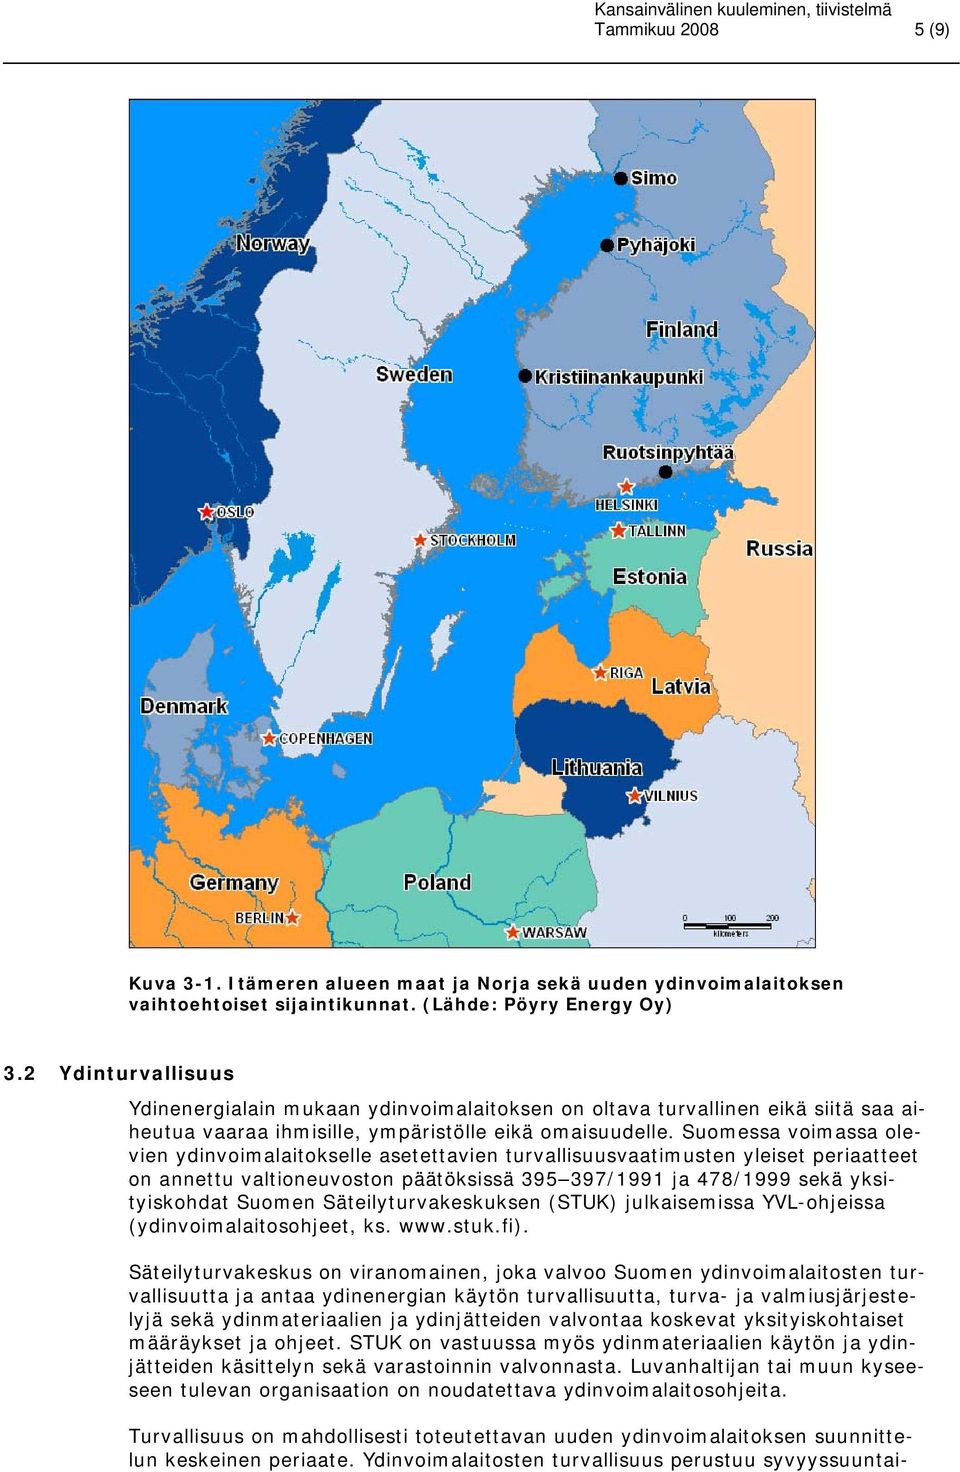 Suomessa voimassa olevien ydinvoimalaitokselle asetettavien turvallisuusvaatimusten yleiset periaatteet on annettu valtioneuvoston päätöksissä 395 397/1991 ja 478/1999 sekä yksityiskohdat Suomen